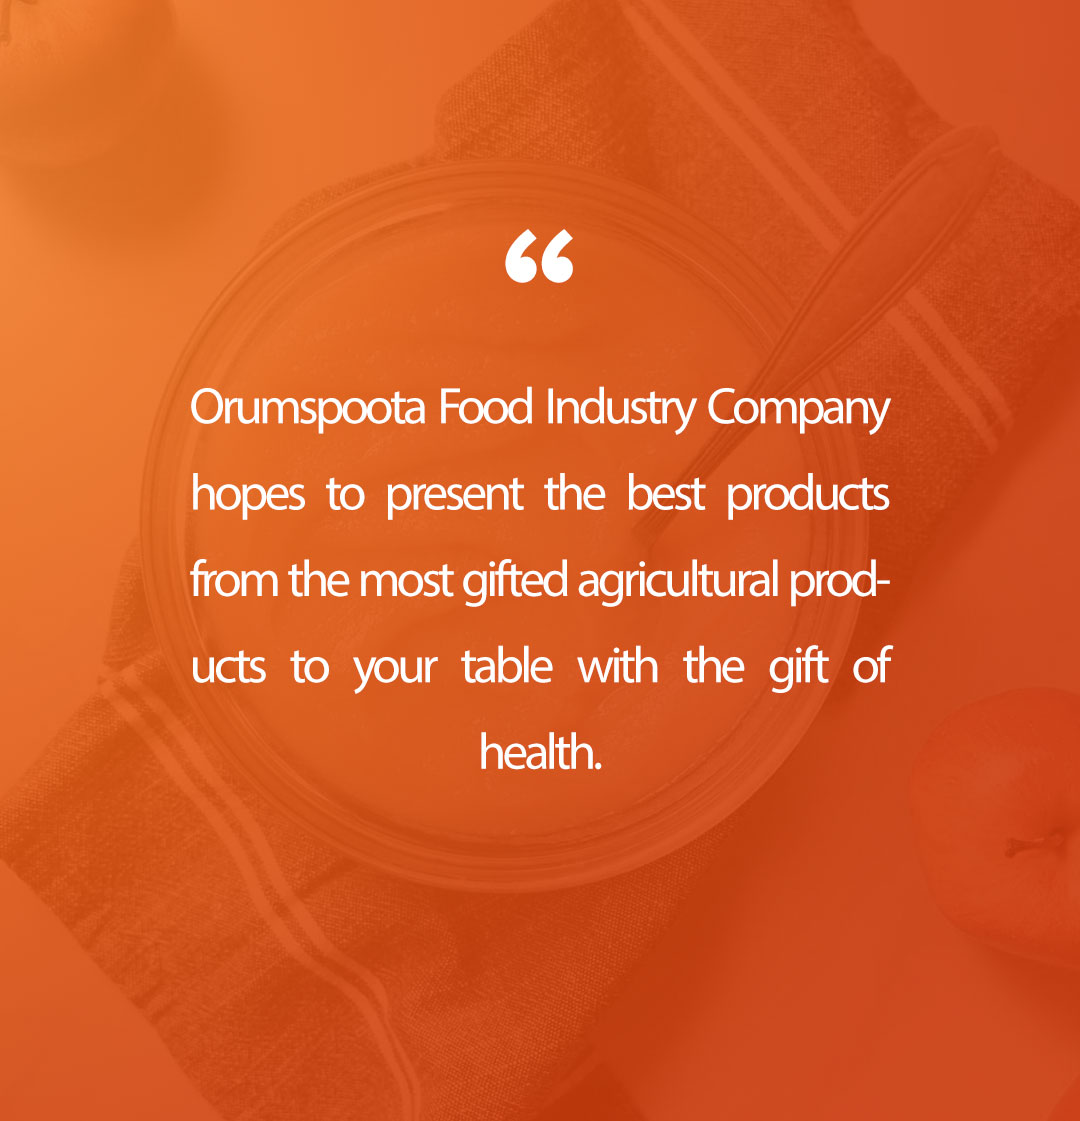 Orum spoota food industries company